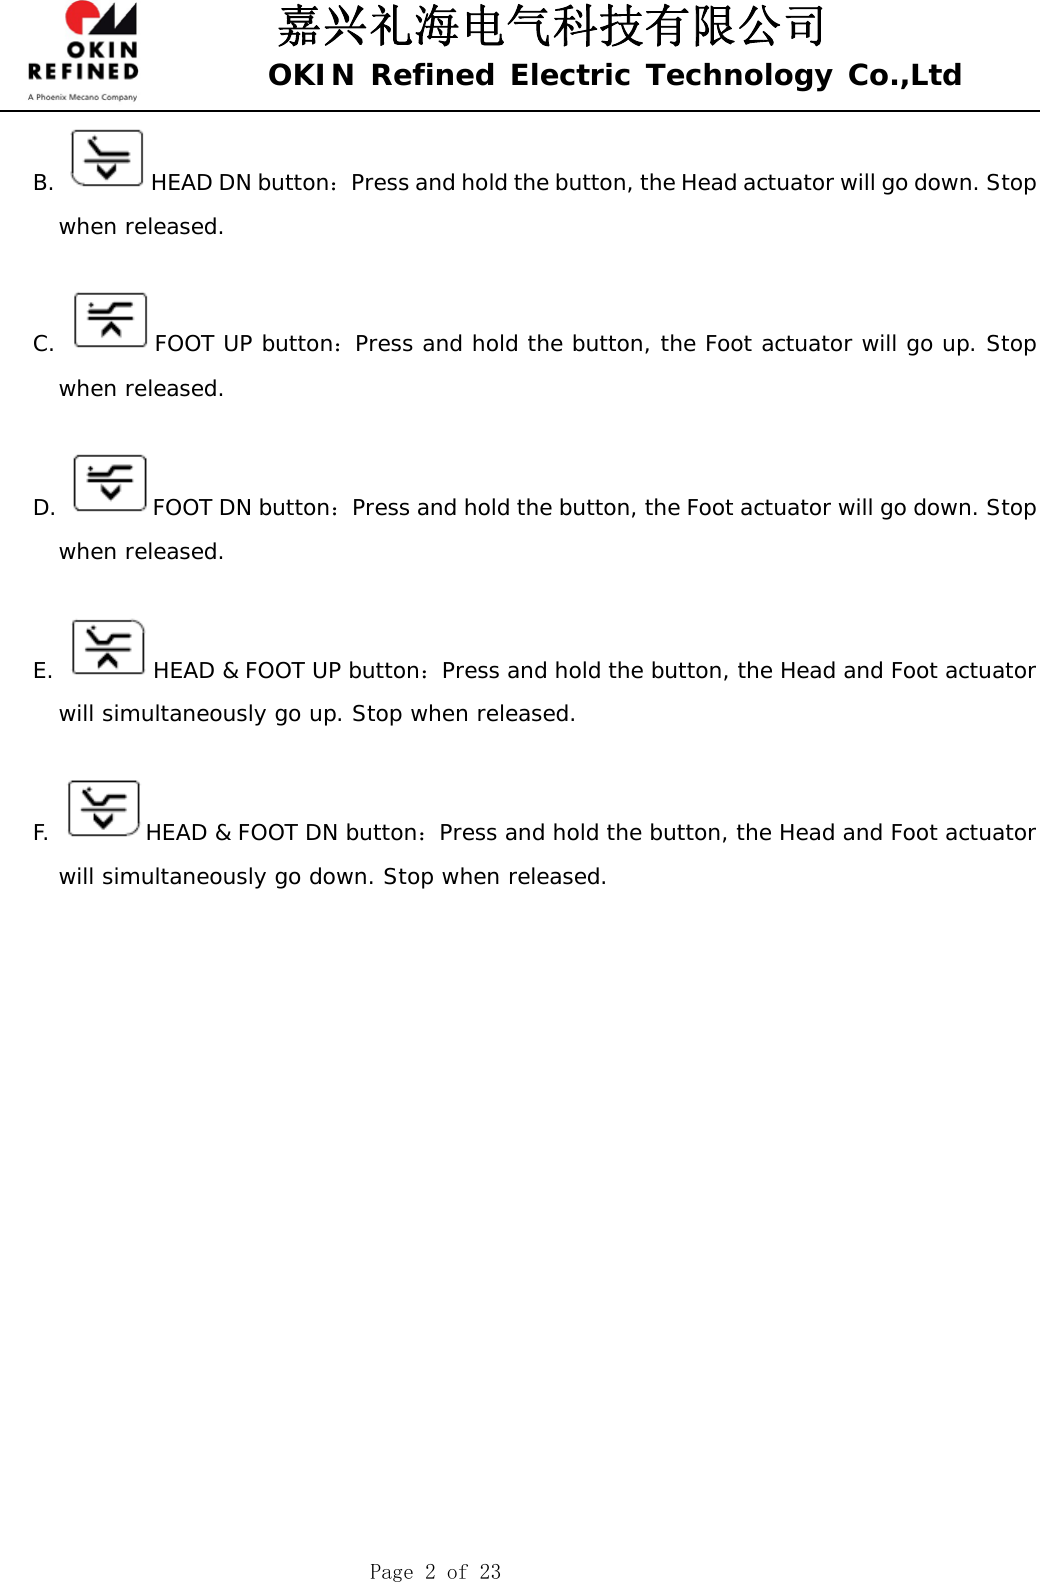 嘉兴礼海电气科技有限公司 OKIN Refined Electric Technology Co.,Ltd    Page 2 of 23 B.  HEAD DN button：Press and hold the button, the Head actuator will go down. Stop when released.  C.  FOOT UP button：Press and hold the button, the Foot actuator will go up. Stop when released.  D.  FOOT DN button：Press and hold the button, the Foot actuator will go down. Stop when released.  E.  HEAD &amp; FOOT UP button：Press and hold the button, the Head and Foot actuator will simultaneously go up. Stop when released.  F.  HEAD &amp; FOOT DN button：Press and hold the button, the Head and Foot actuator will simultaneously go down. Stop when released.           